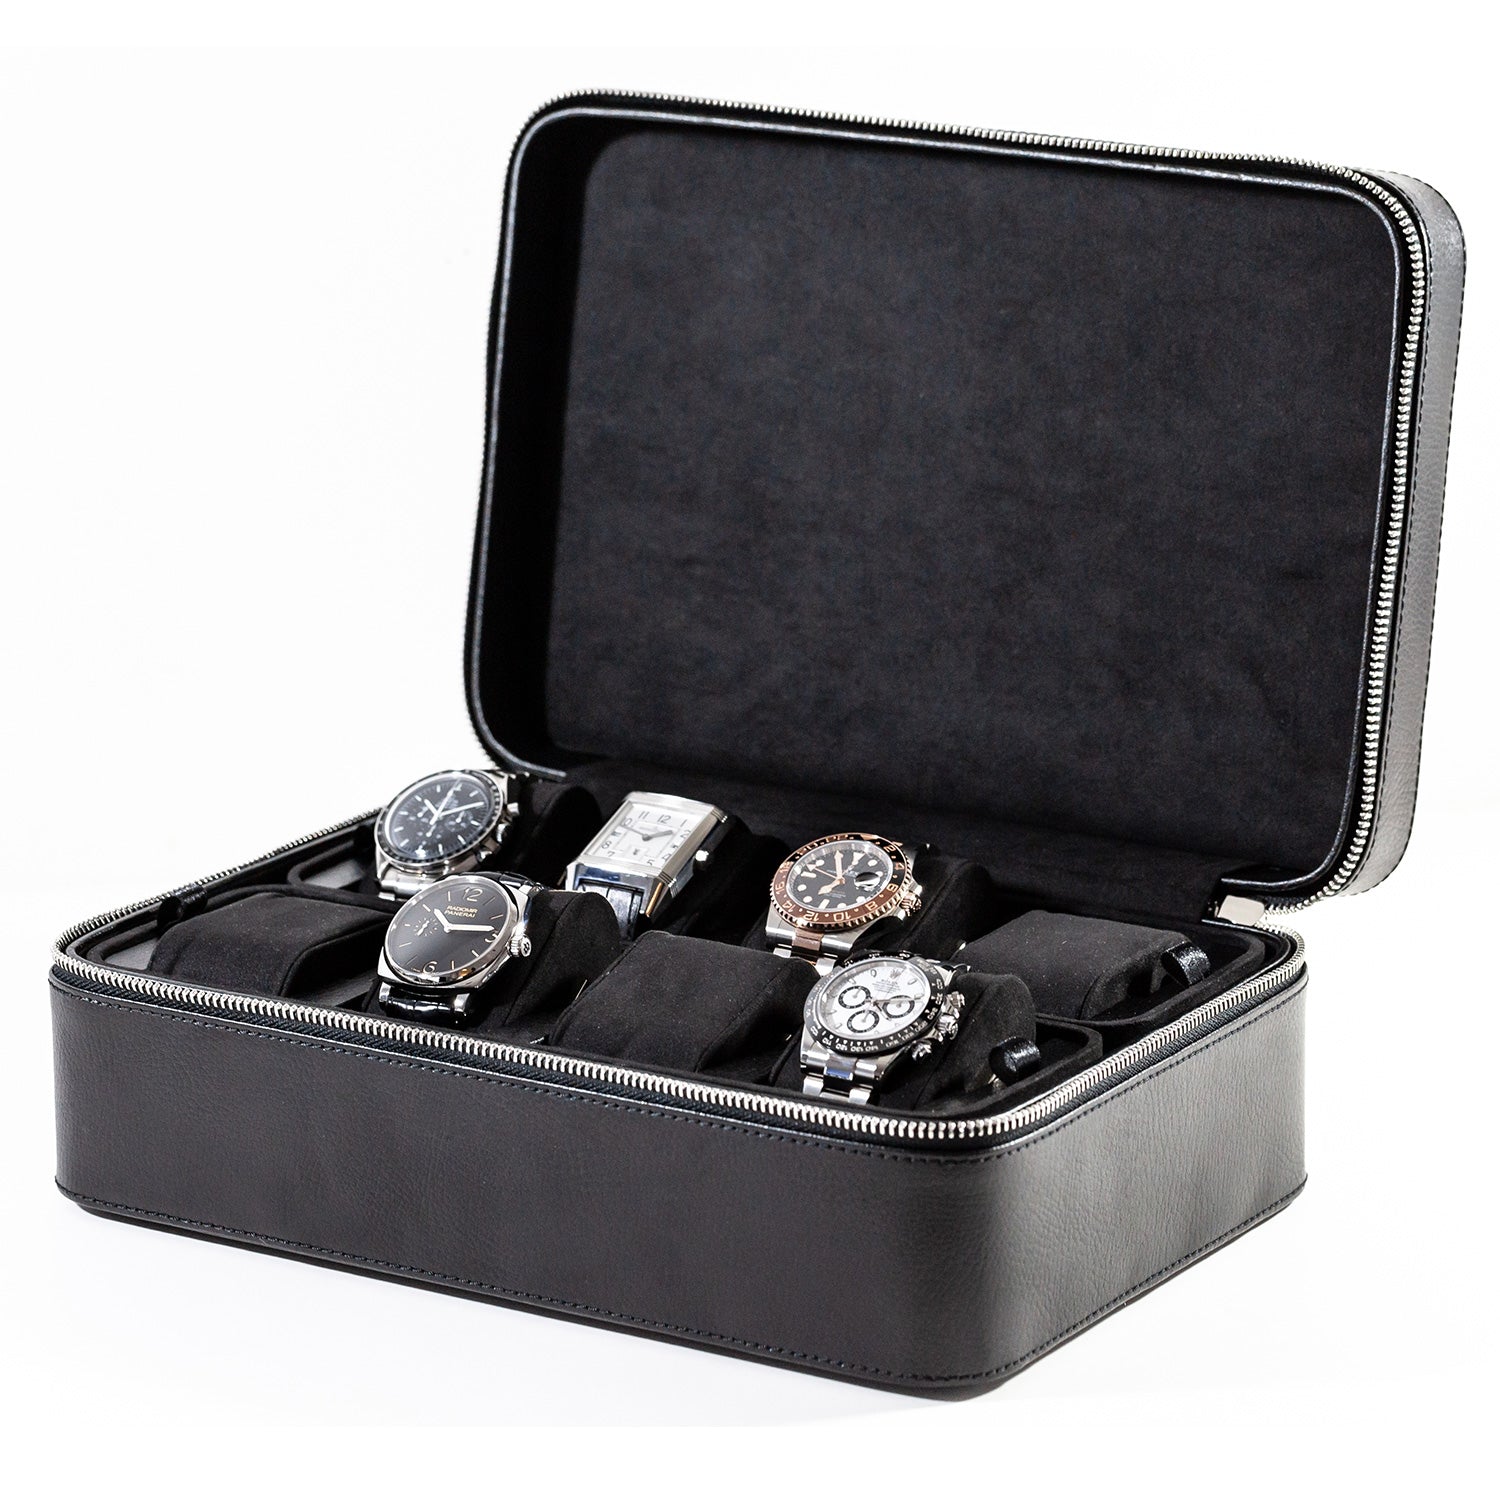 Luxury watch travel case – IFL Watches